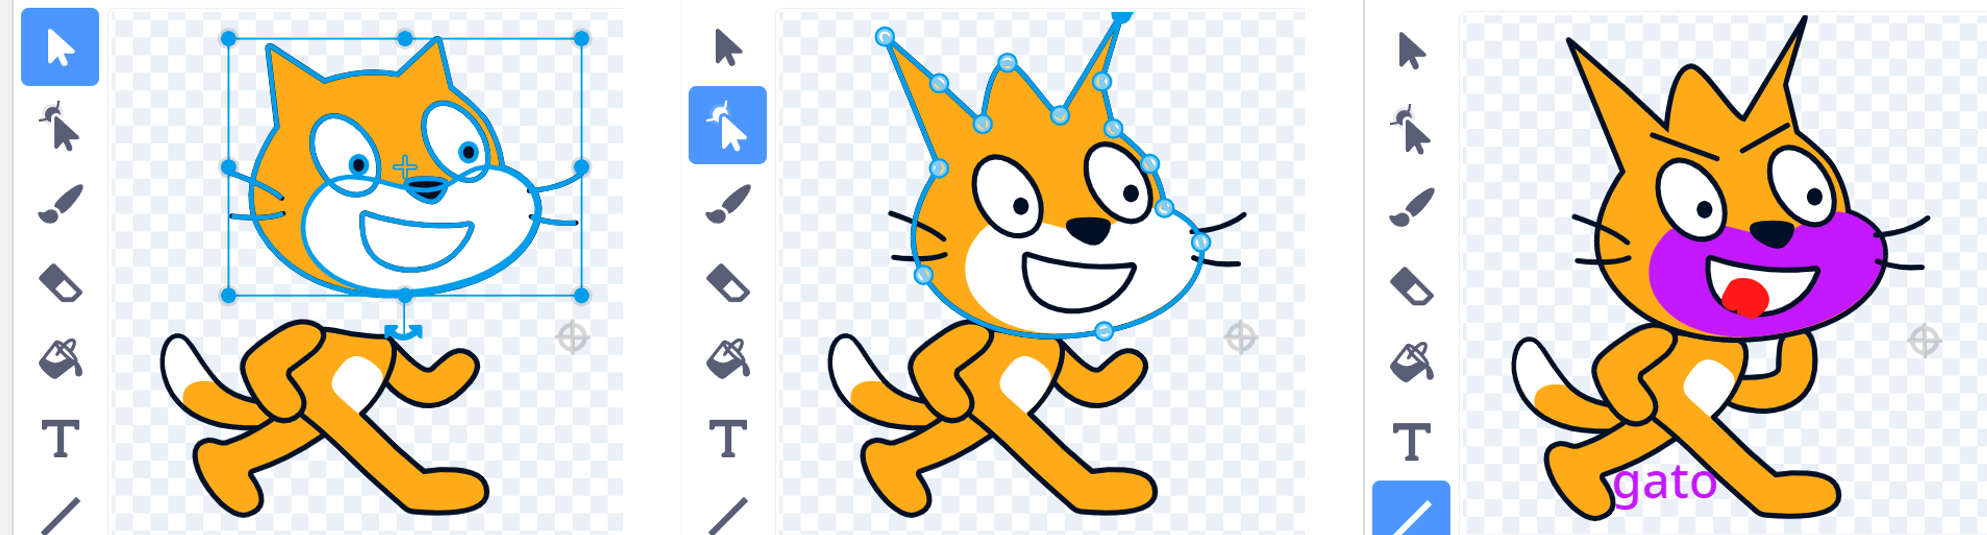 Se muestran tres imágenes del personaje Scratch transformado: a la izquierda, se le ha separado la cabeza; a la derecha tiene otros cambios: cejas, lengua roja, giro del brazo y texto; en la imagen central tiene señalados unos nodos formando una especie de corona.